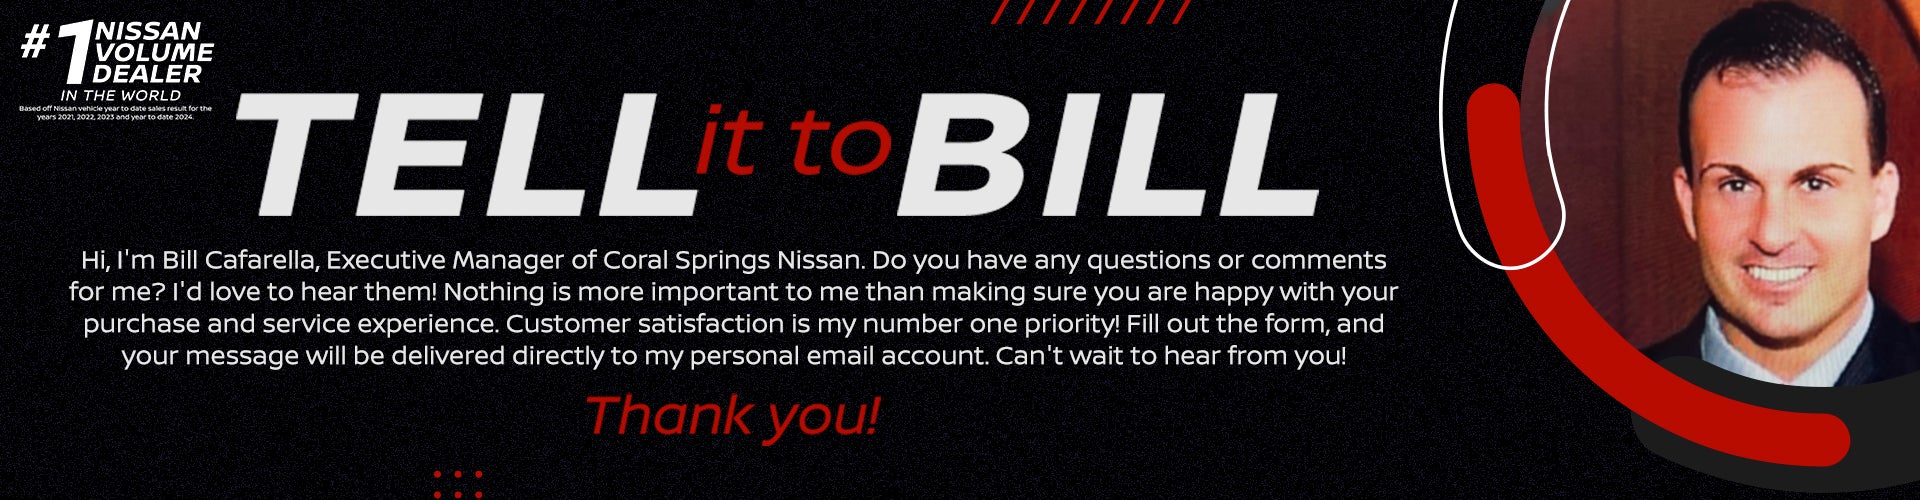 Tell it to Bill